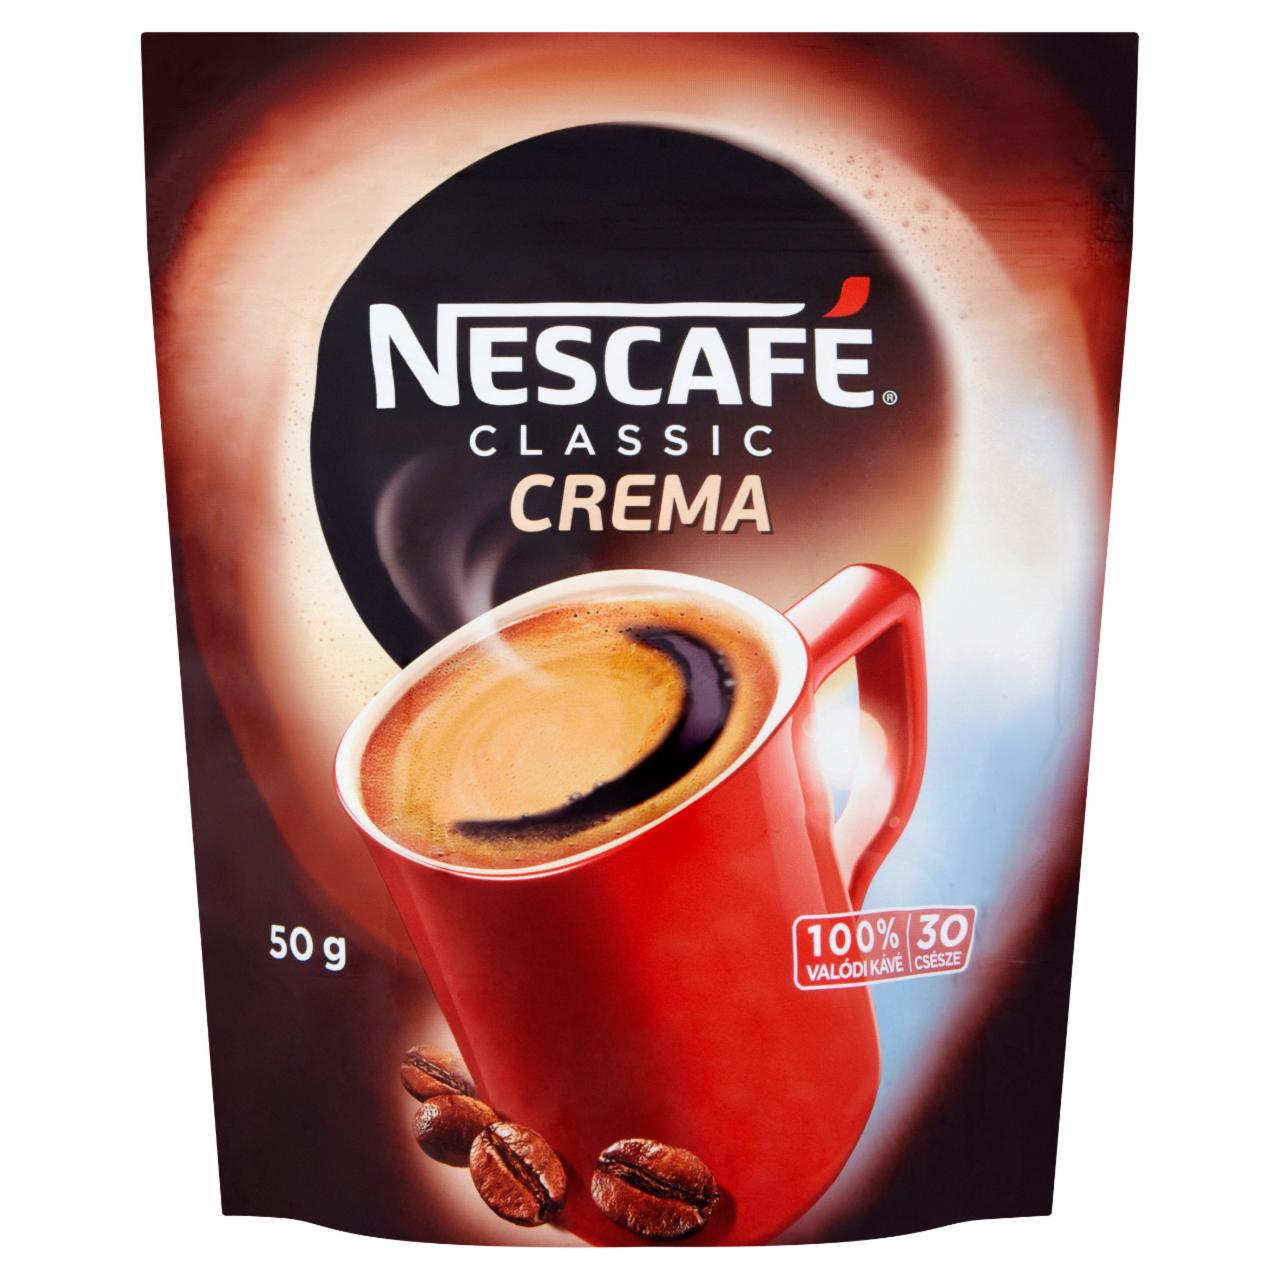 Képek - Nescafé Crema azonnal oldódó kávé 200 g